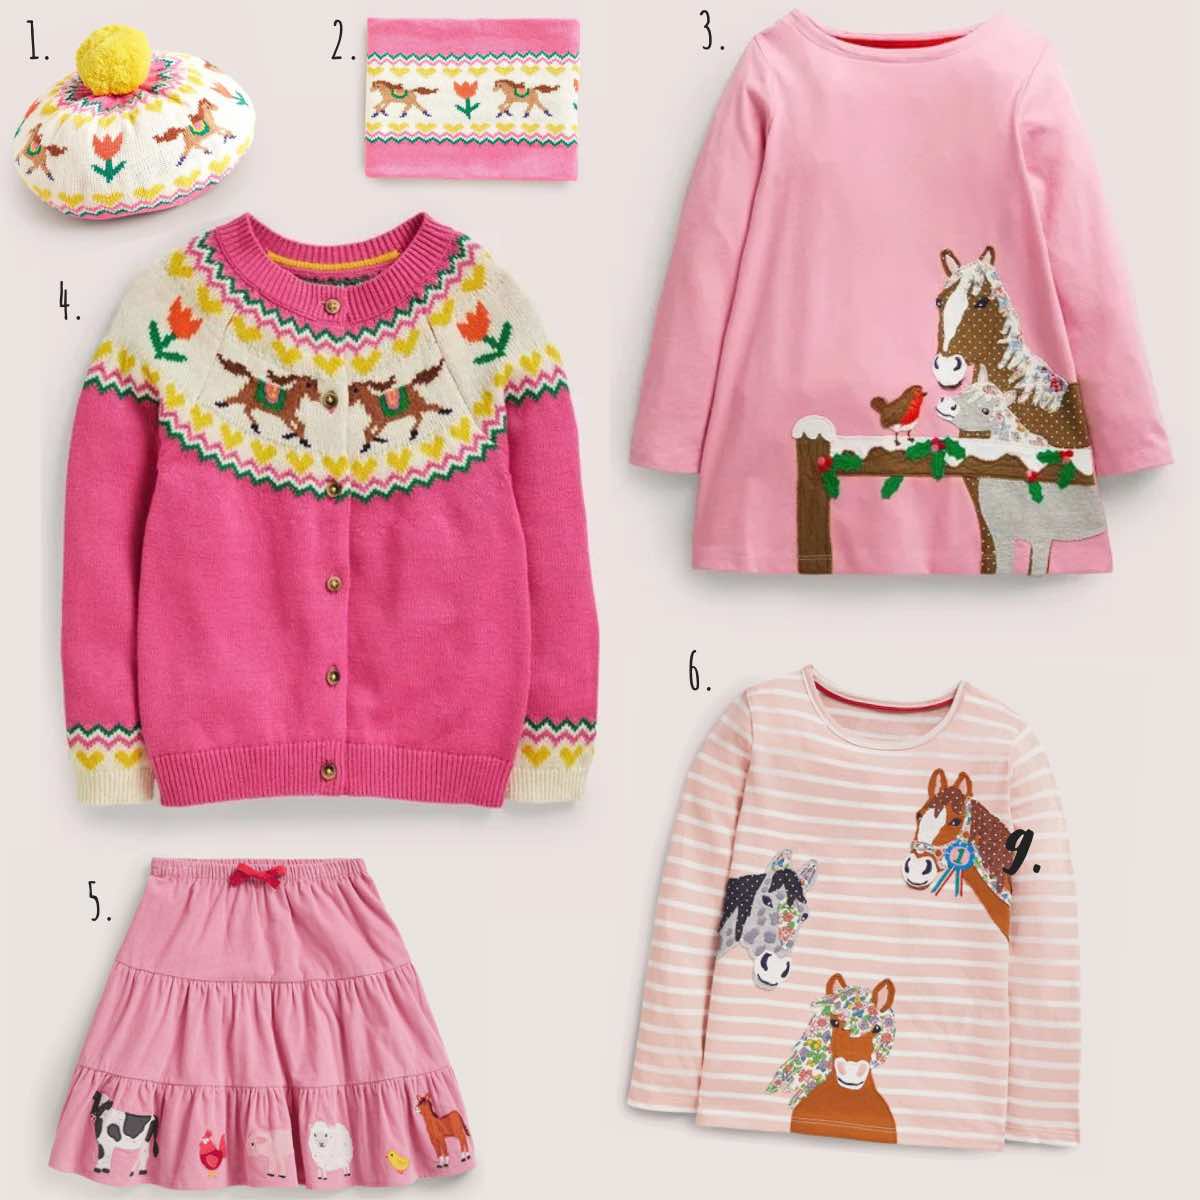 Mini Boden Pferde-Motiv Cardigan, Tunika, Mütze und Schal für die kalte Jahreszeit. Herbst und Winter Bekleidung für Kinder.